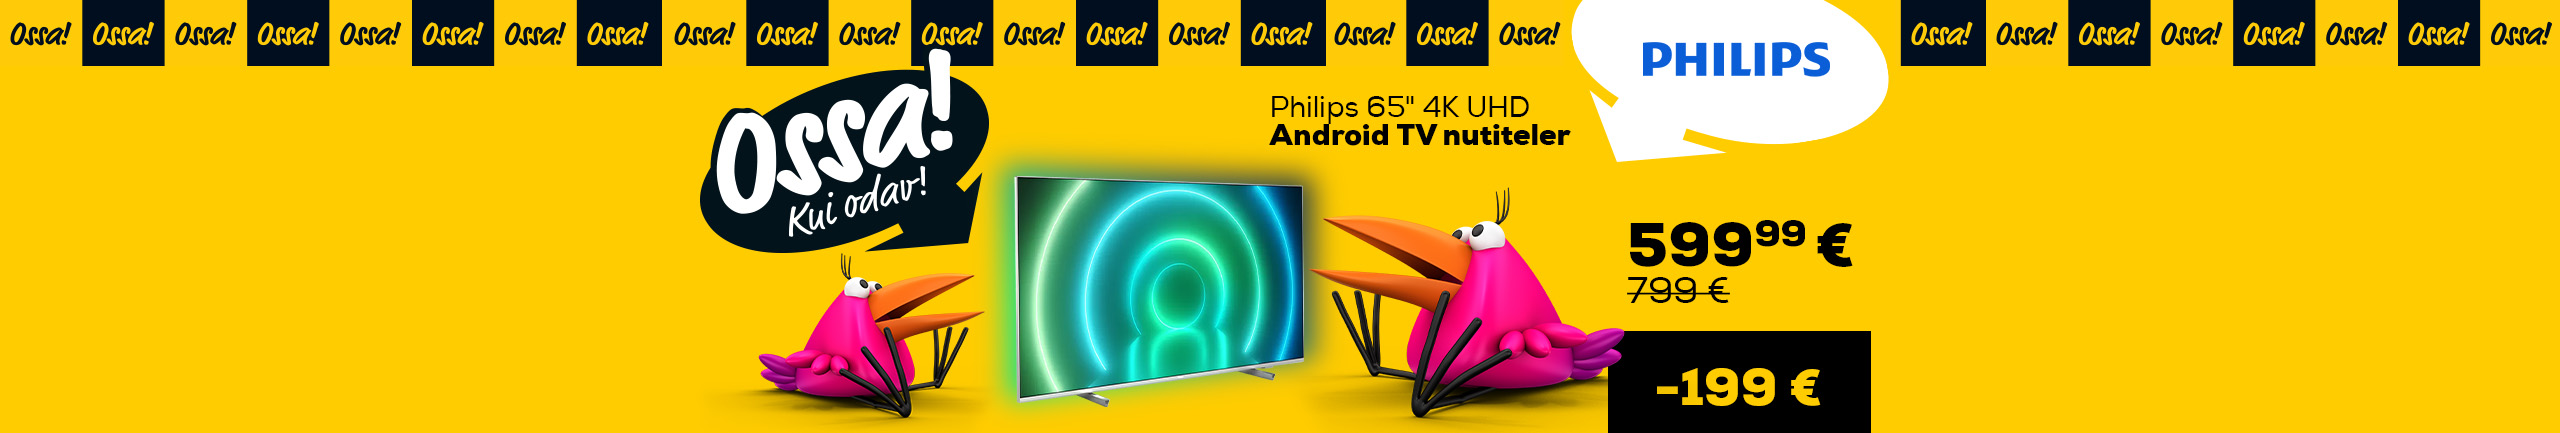 Ossa! Kui odavad hinnad! Suvi 2022. Philips 65" 4K UHD  Android TV nutiteler